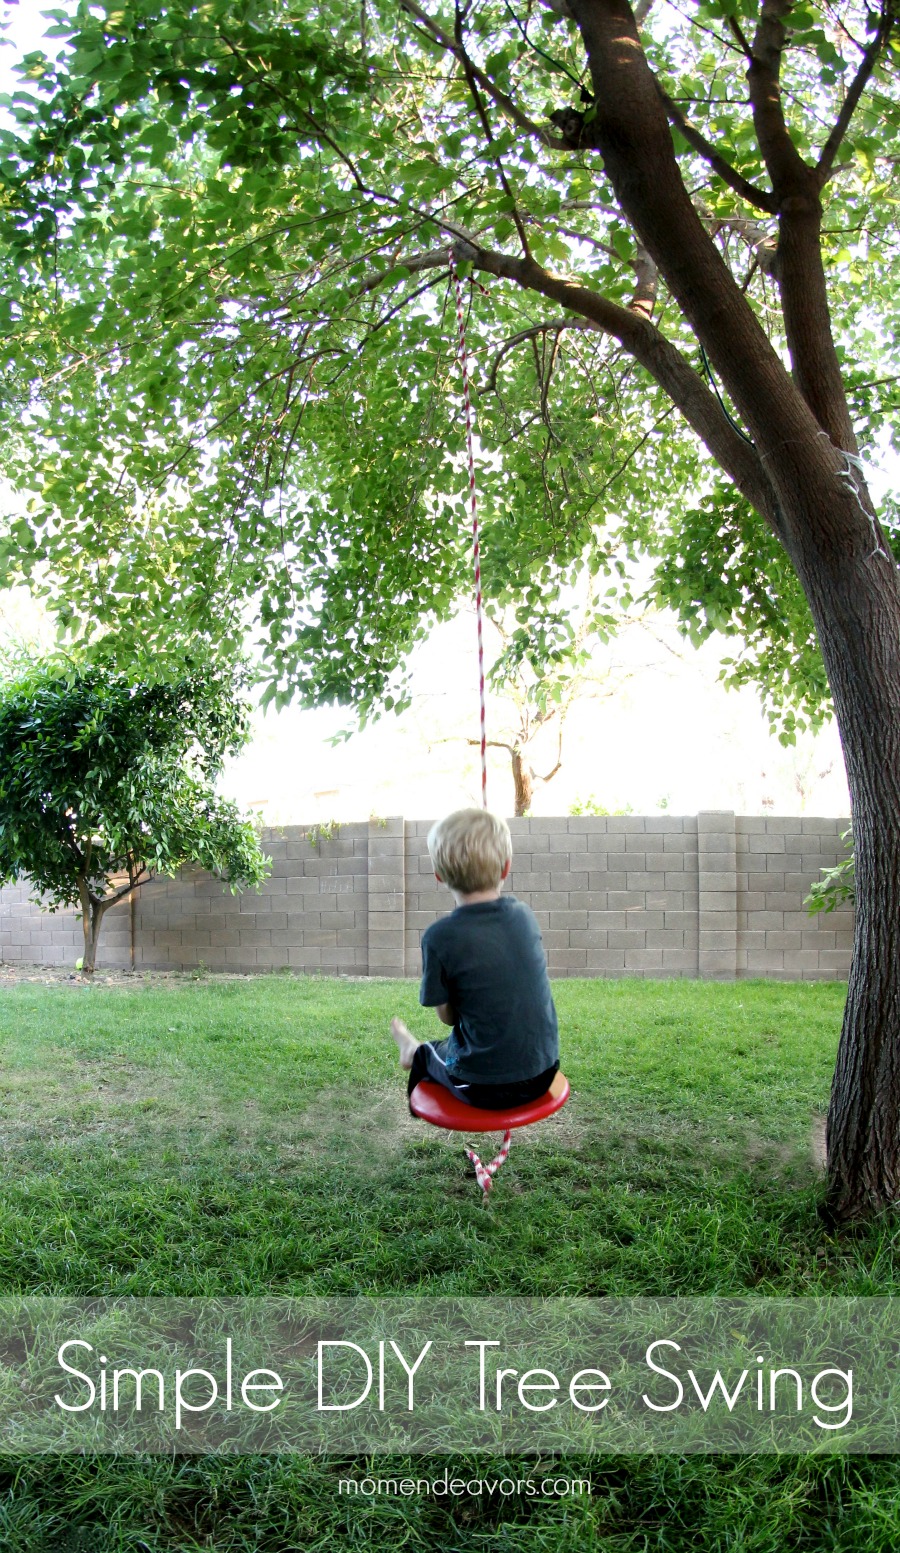 DIY Tree Swing Outdoor Activity For Kids - Ideas for outdoor activities for children.